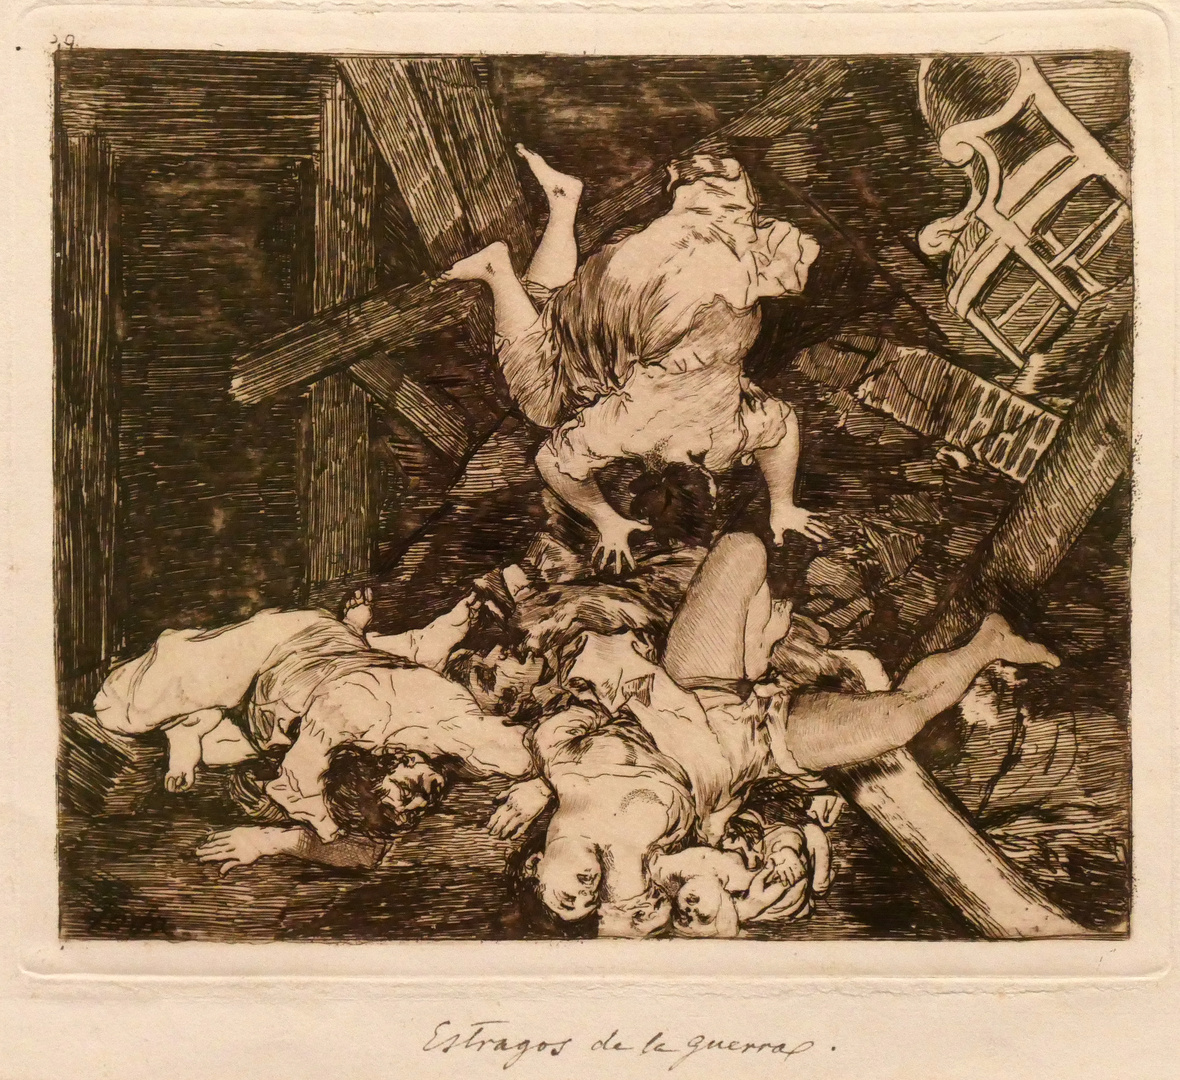 Goya: Estragos de la guerra